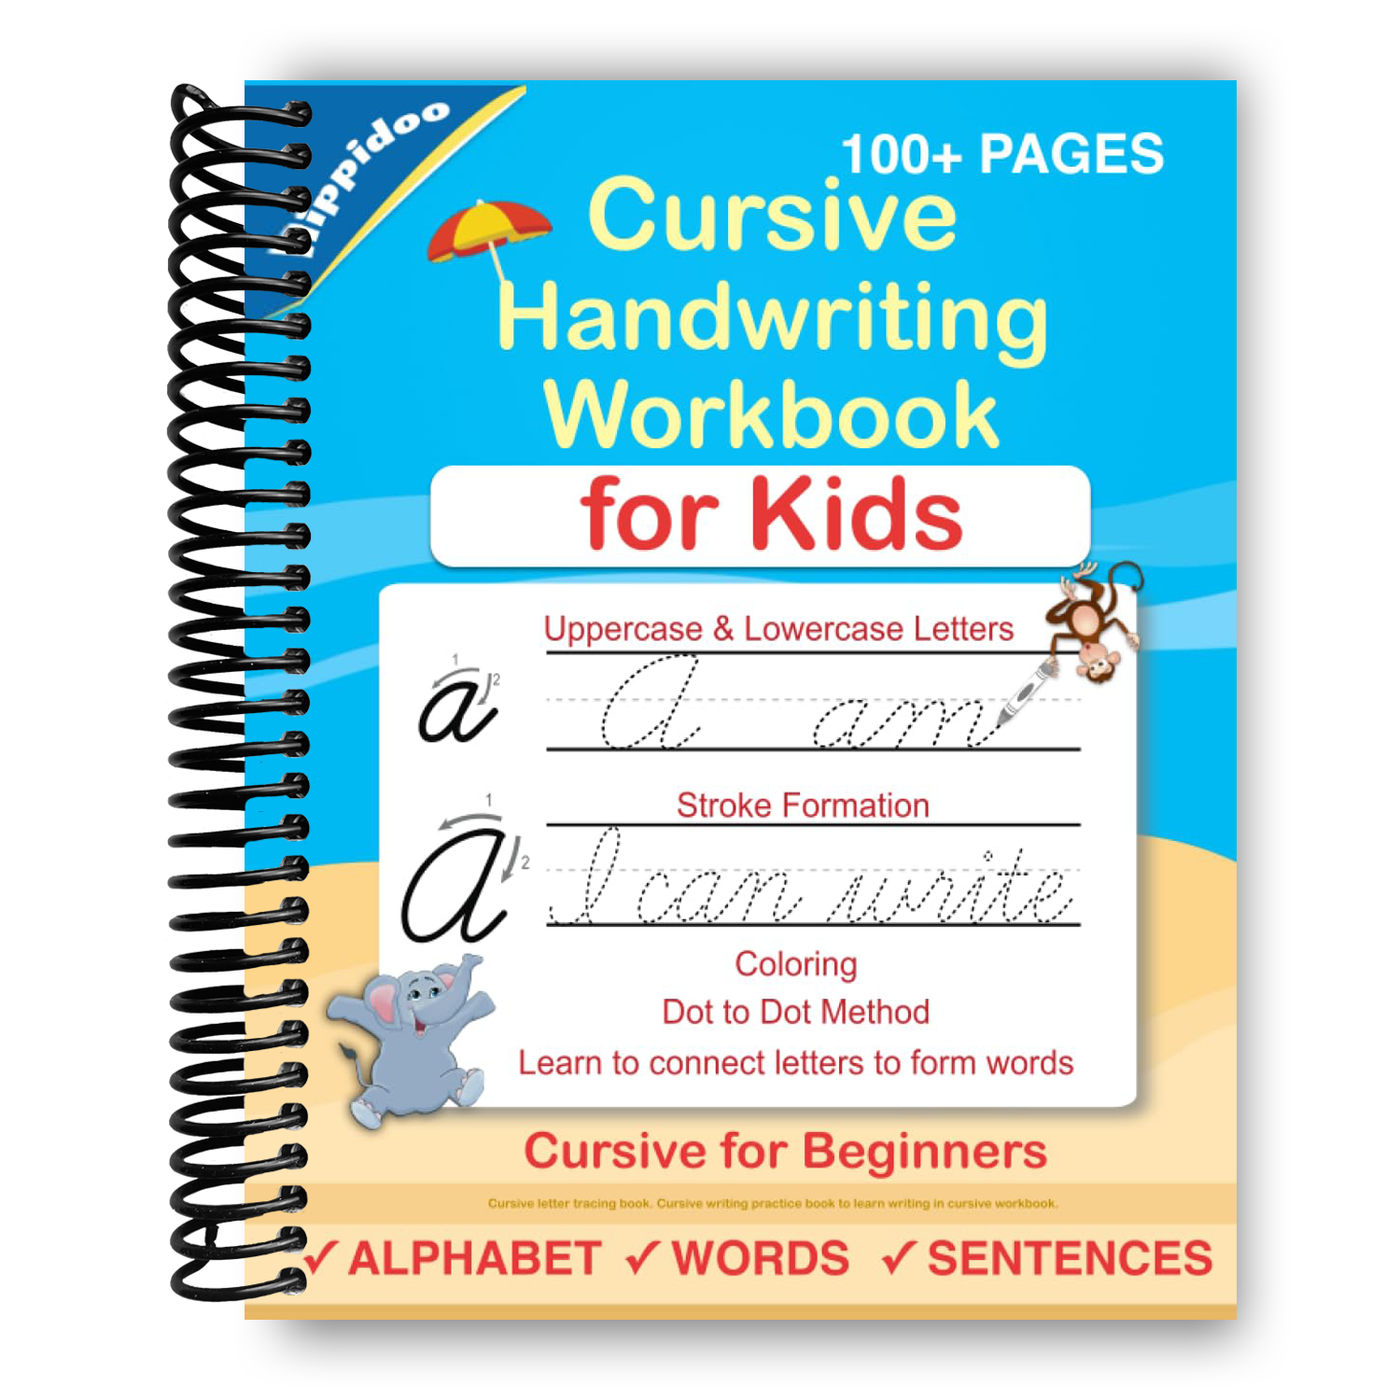 Cursive Handwriting Workbook For Kids: Cursive for beginners workbook (Spiral Bound)